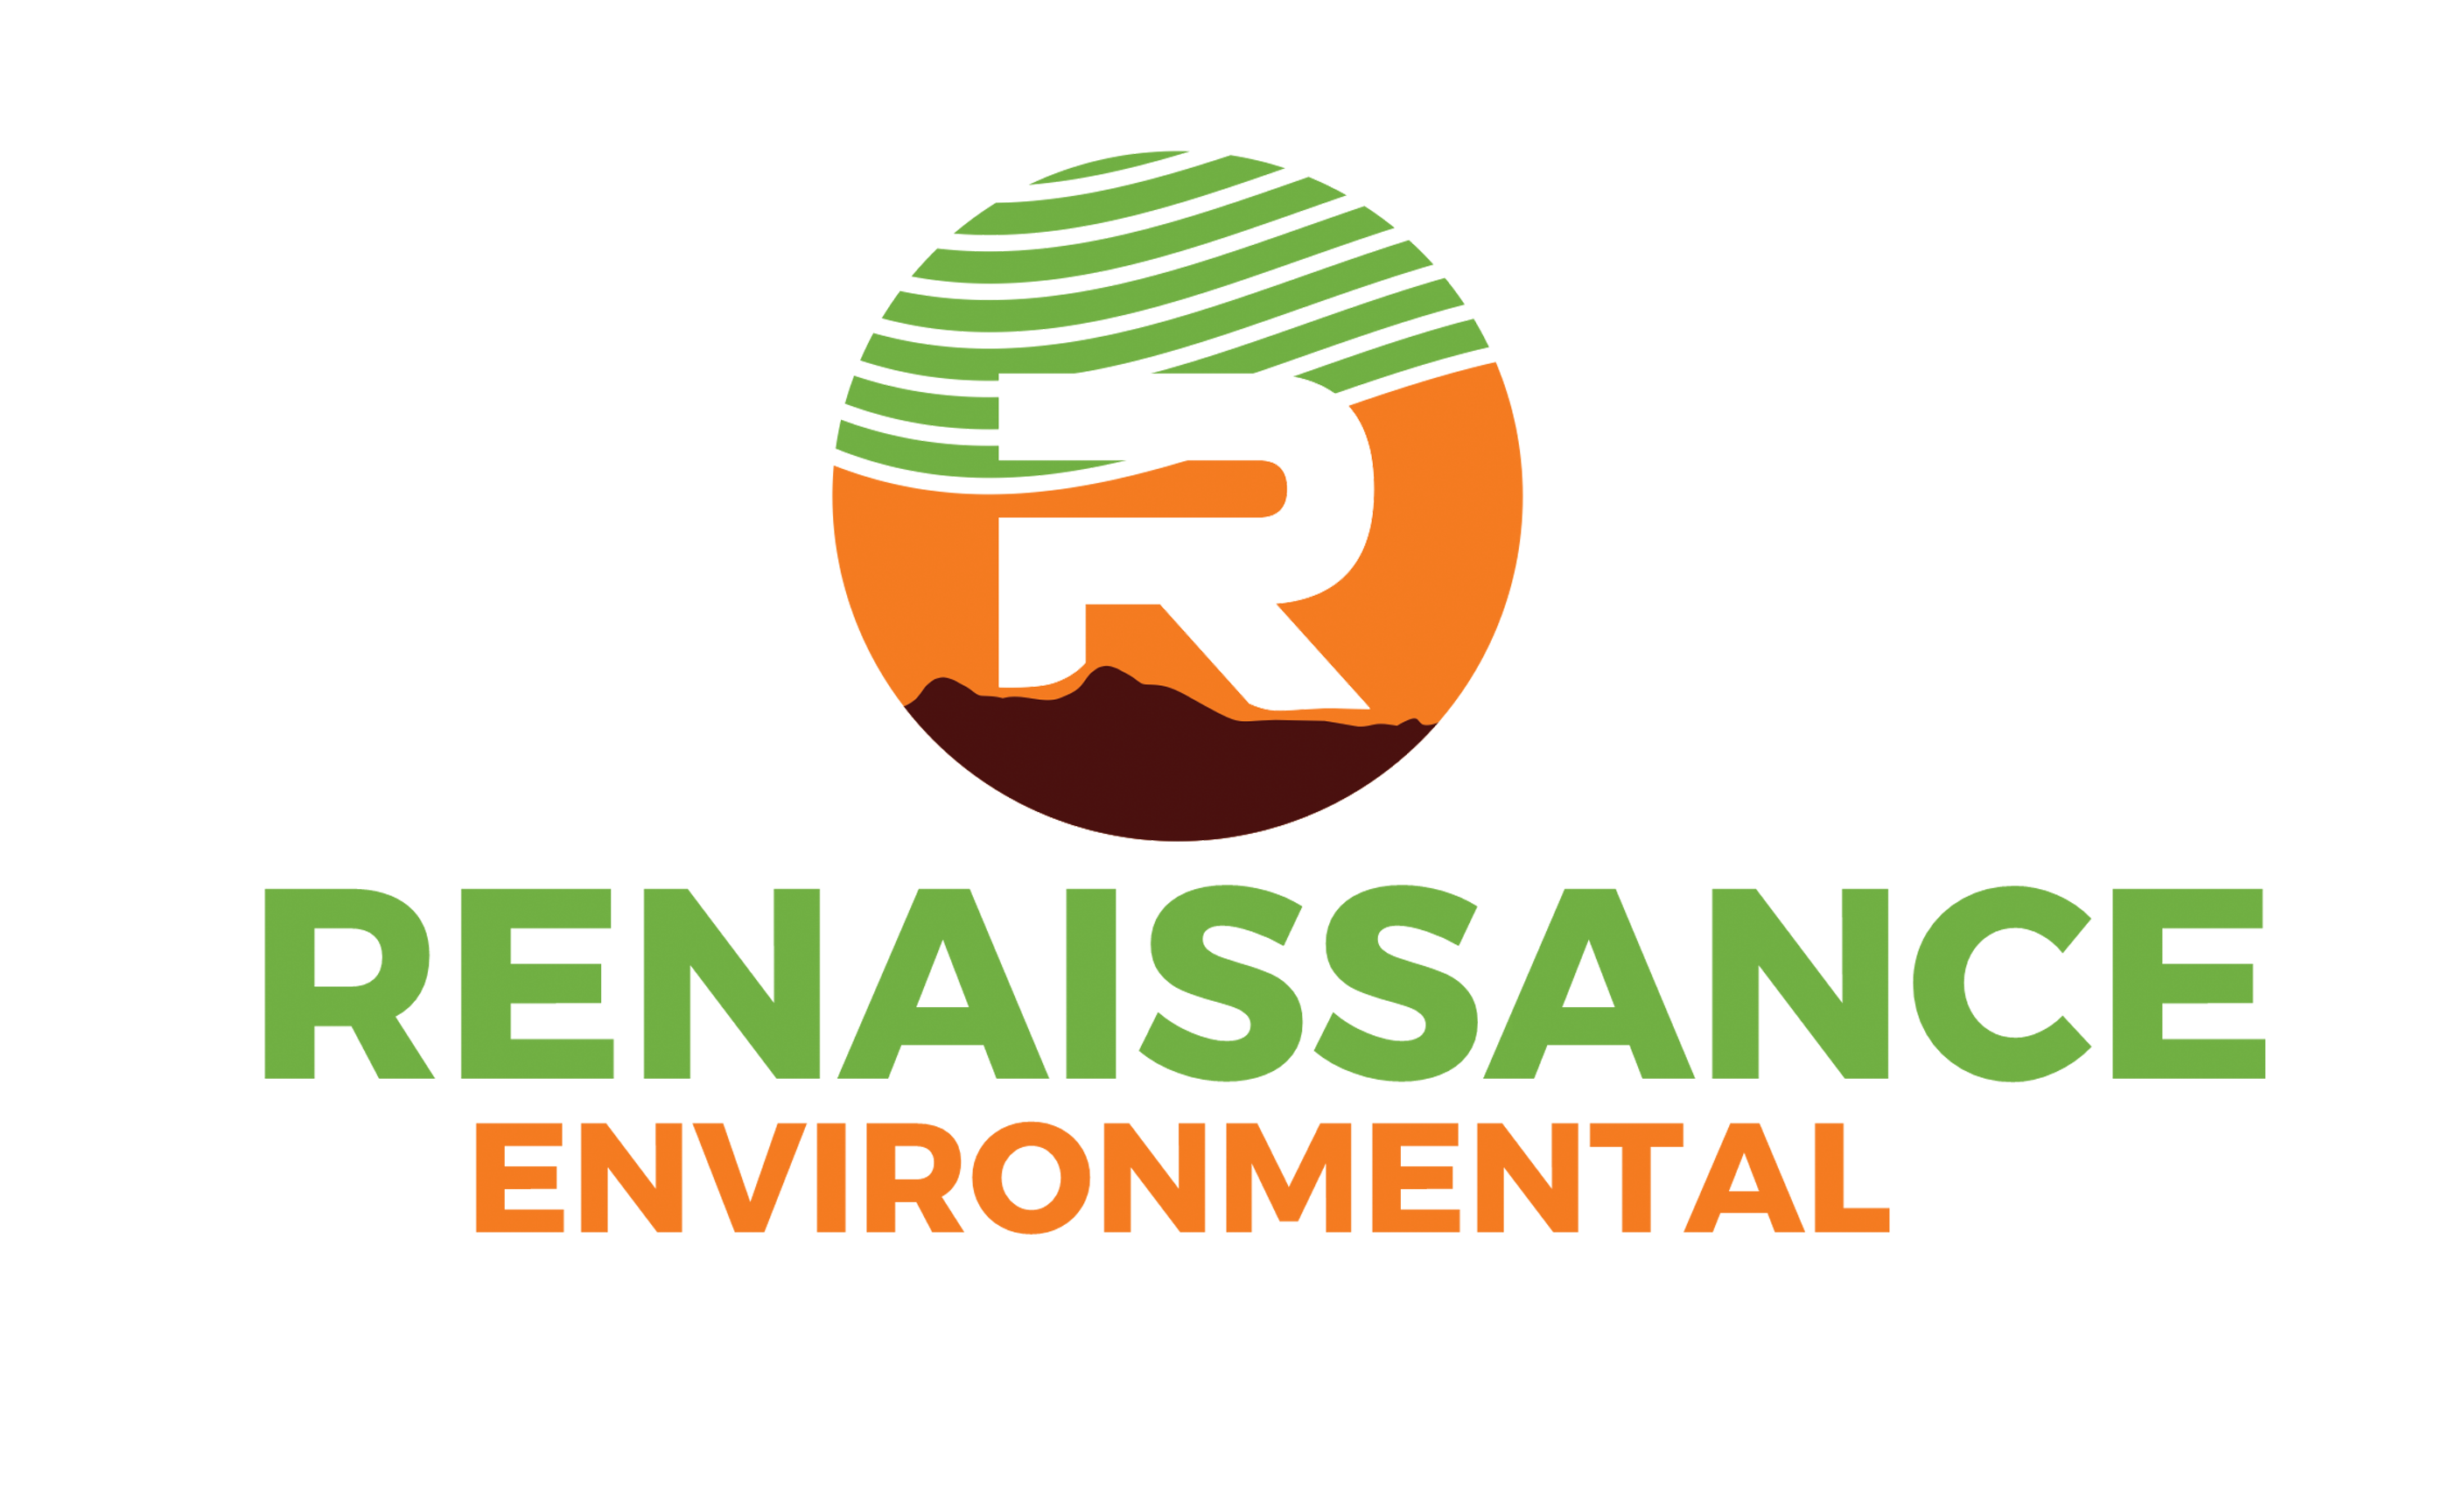 Renaissance Environmental Services Logo